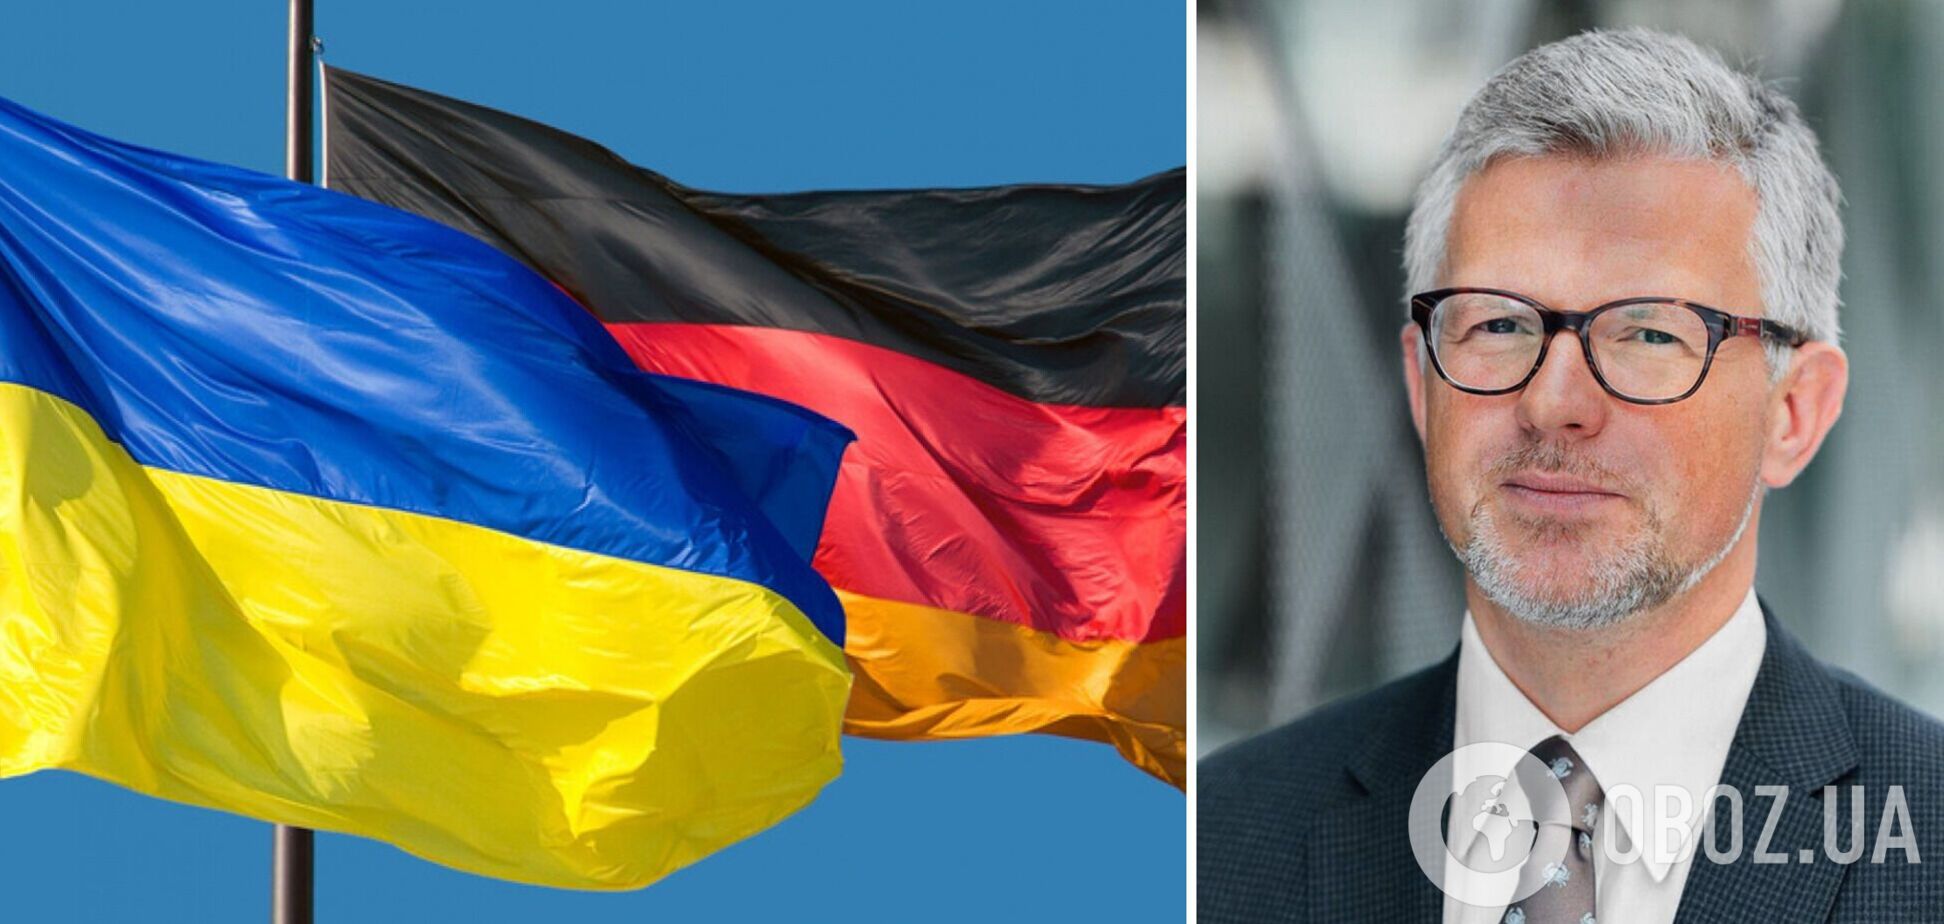 Посол Украины в Германии раскритиковал Берлин: пока вы колеблетесь, Россия убивает женщин и детей